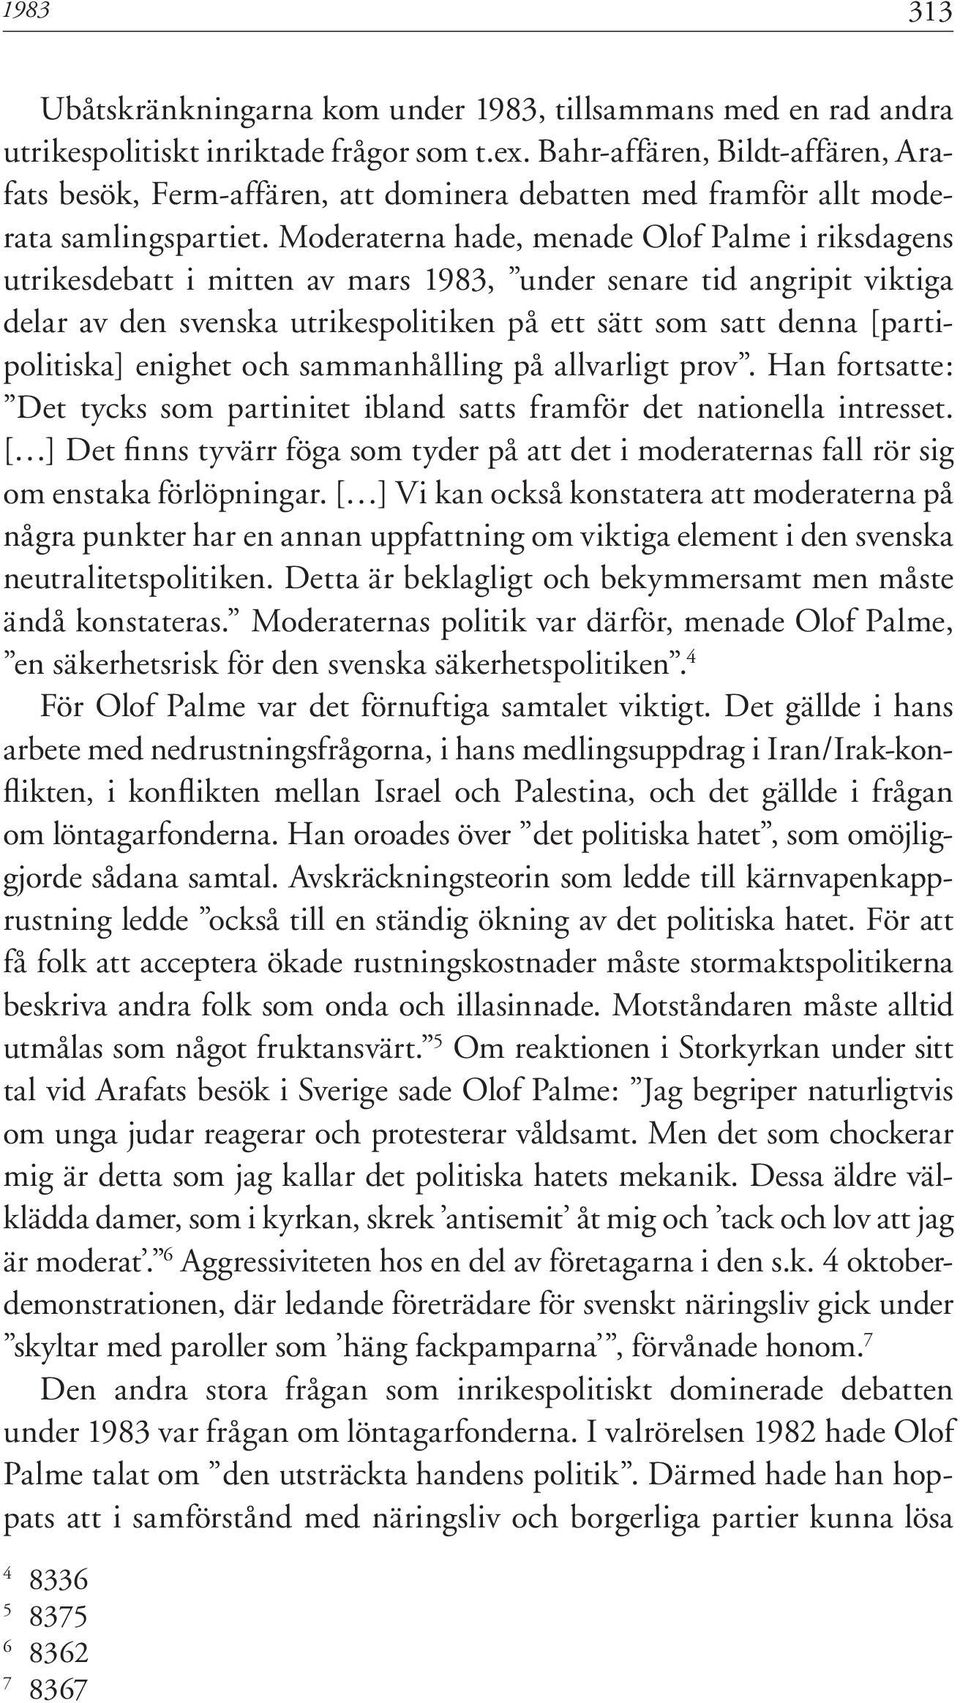 Moderaterna hade, menade Olof Palme i riksdagens utrikesdebatt i mitten av mars 1983, under senare tid angripit viktiga delar av den svenska utrikespolitiken på ett sätt som satt denna